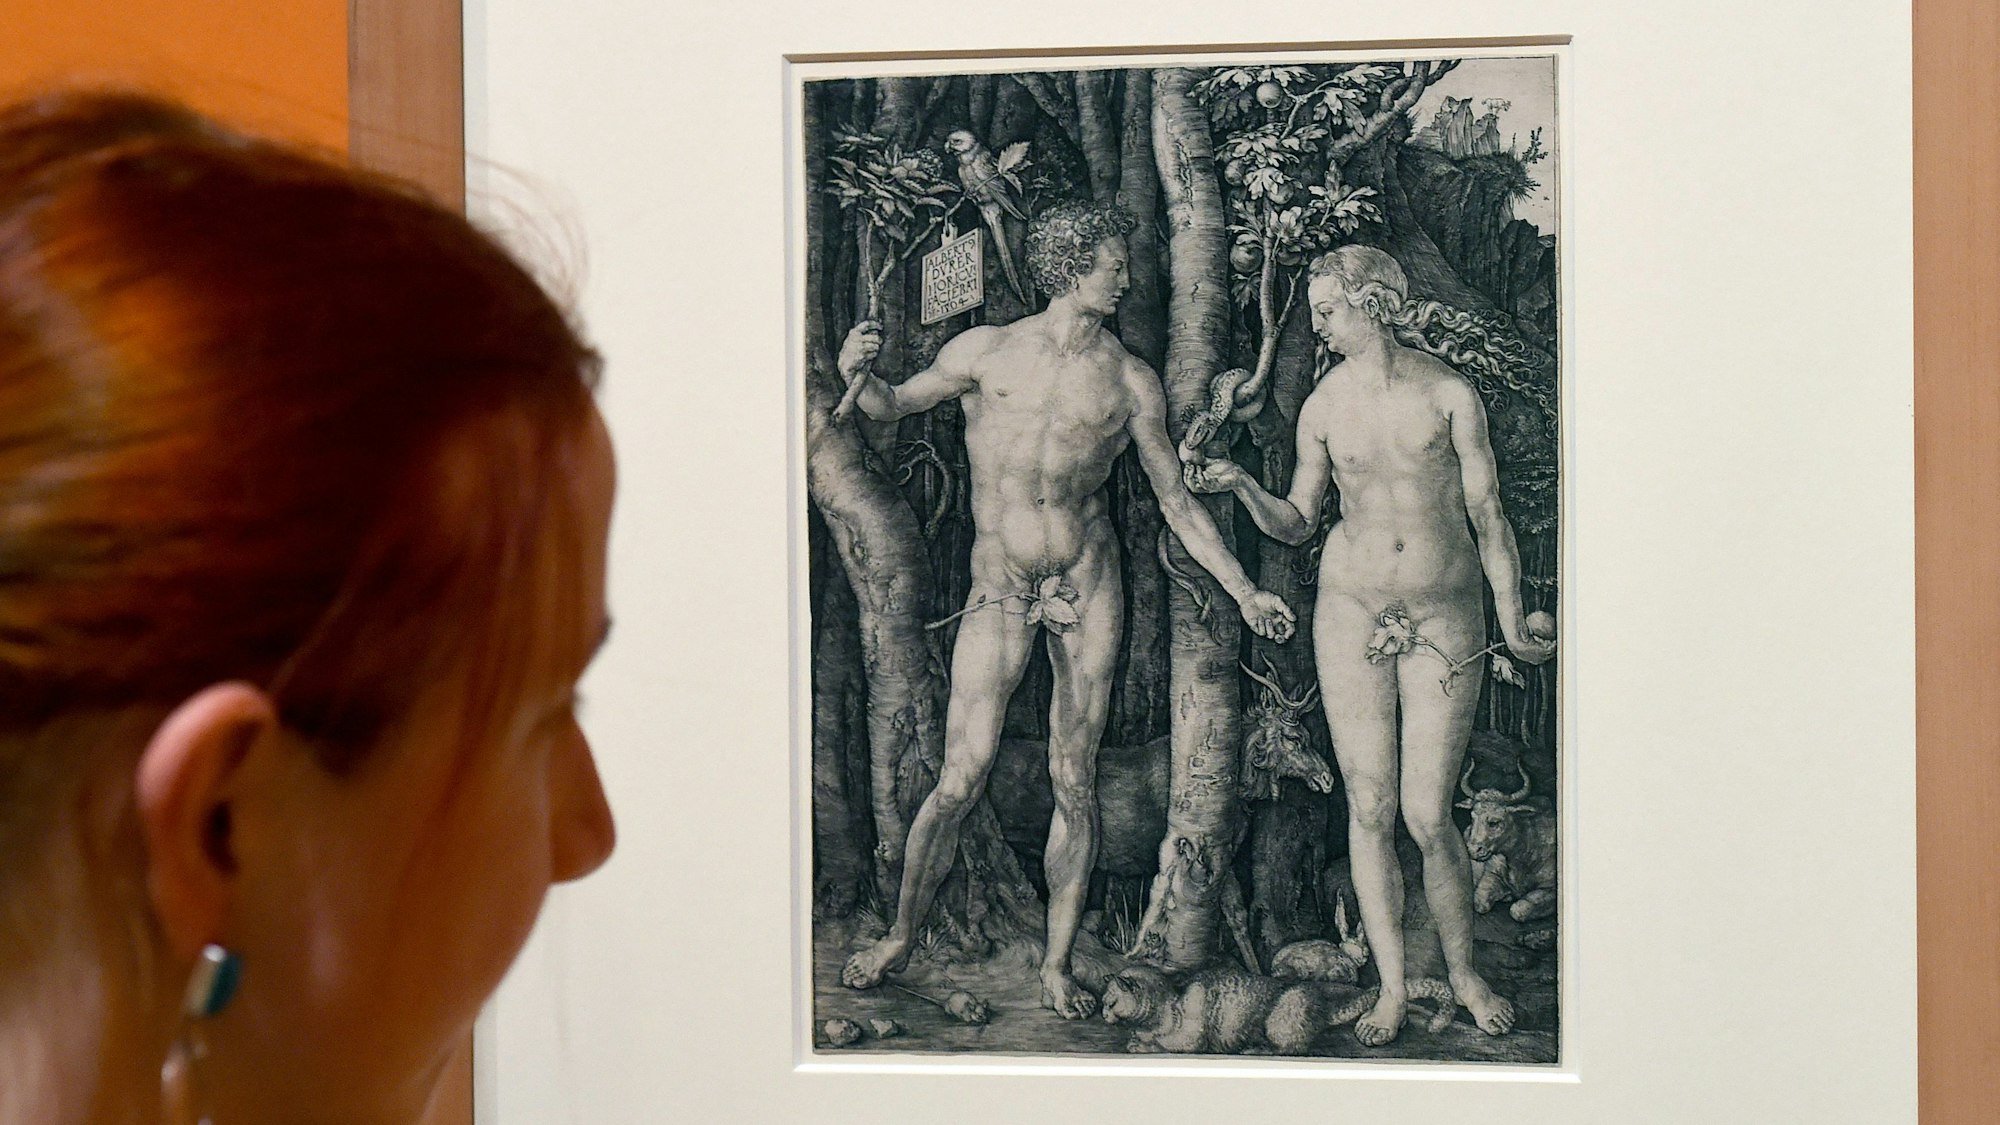 Gemälde, auf denen laut Algorithmus zu viel nackte Haut gezeigt wird, können nicht auf sozialen Medien gepostet werden. Auf dem Foto (aufgenommen am 26. Januar 2015) sieht man den Kupferstich „Adam und Eva“ aus der Ausstellung „Nackte Tatsachen“ in Braunschweig